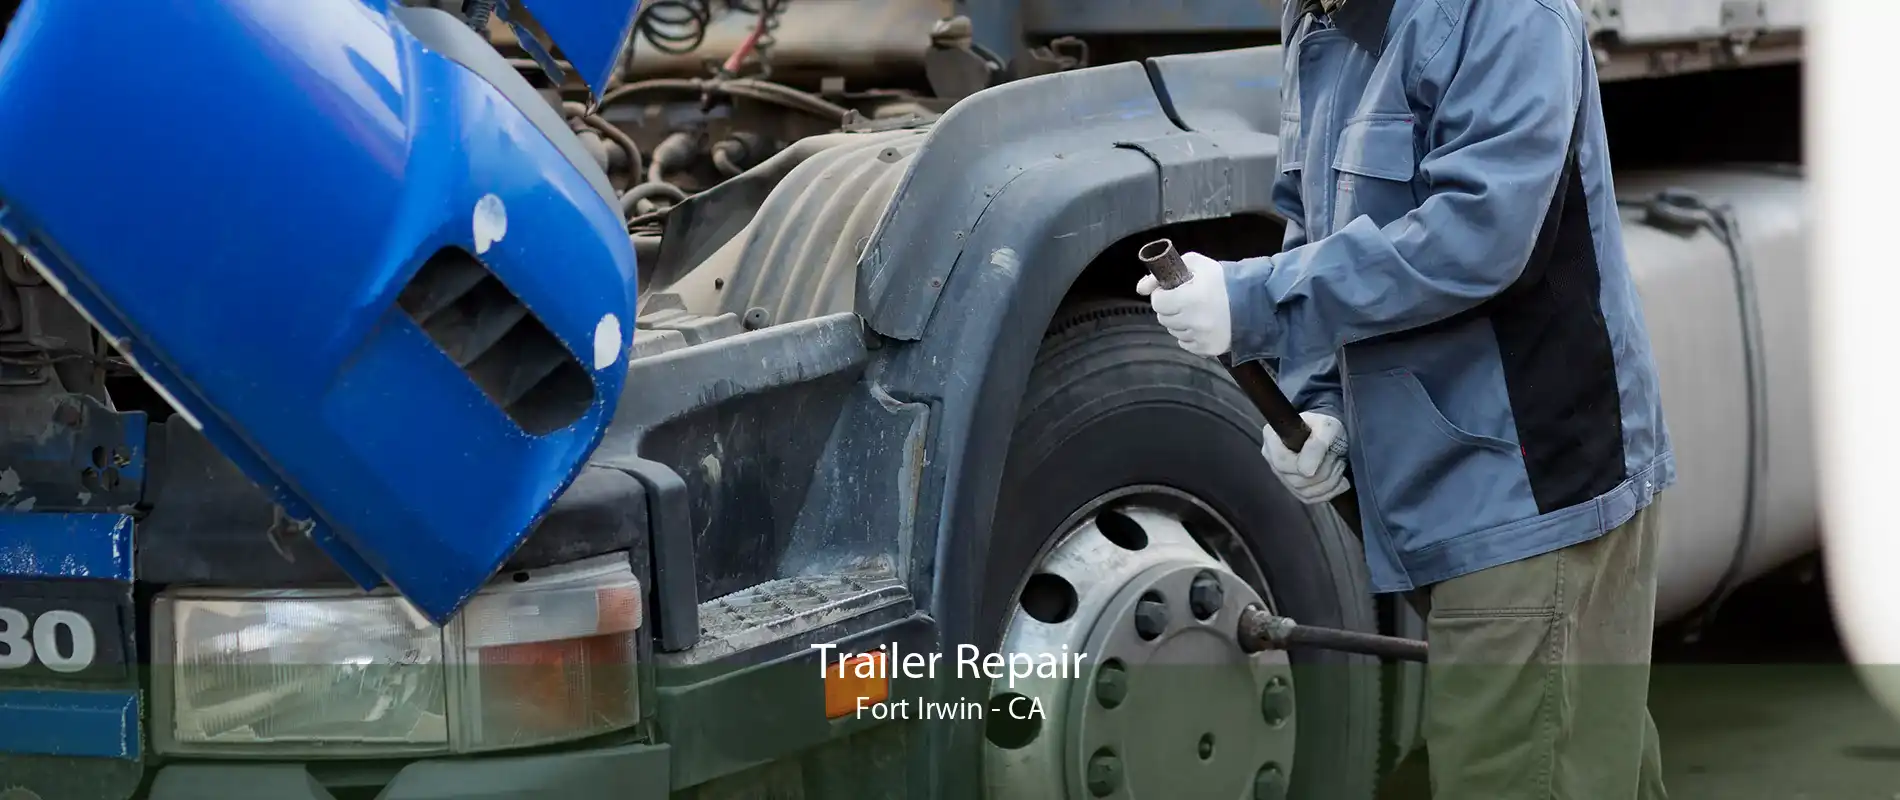 Trailer Repair Fort Irwin - CA